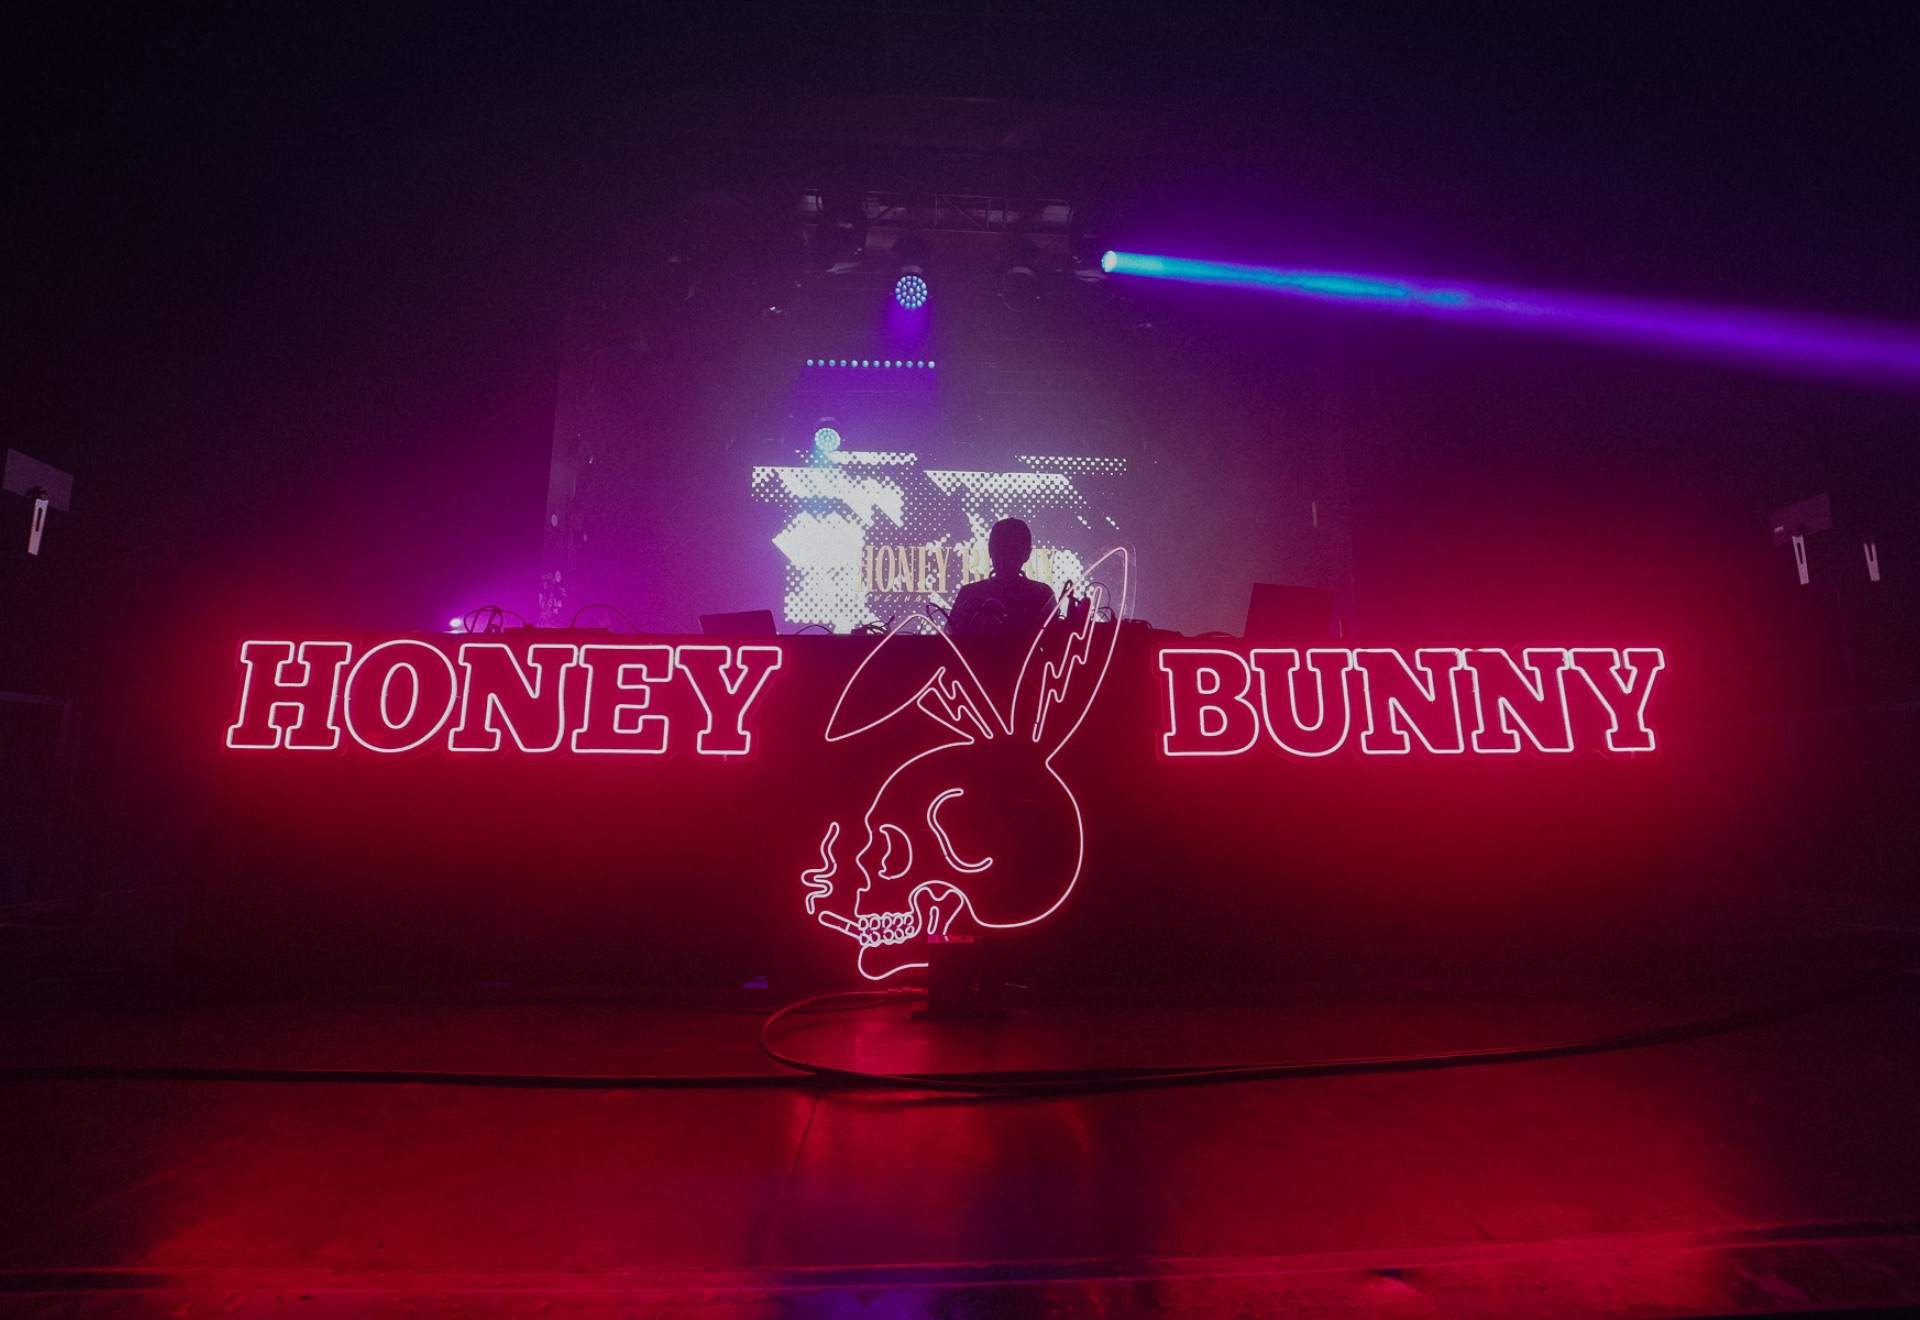 HONEY BUNNY & BASS BUNNY - Página frontal